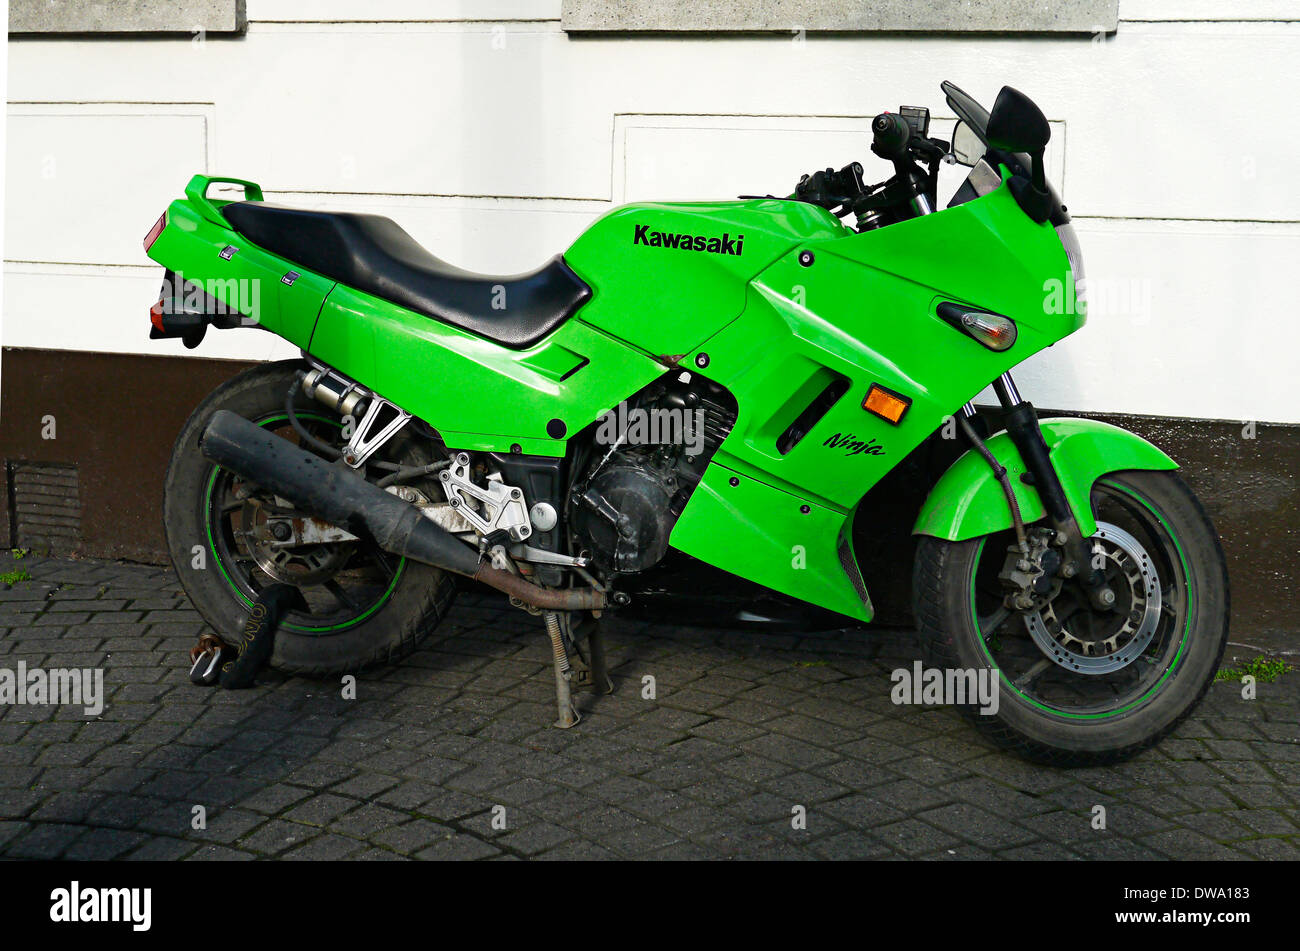 Kawasaki Ninja Motorrad Dublin Irland Stockfoto